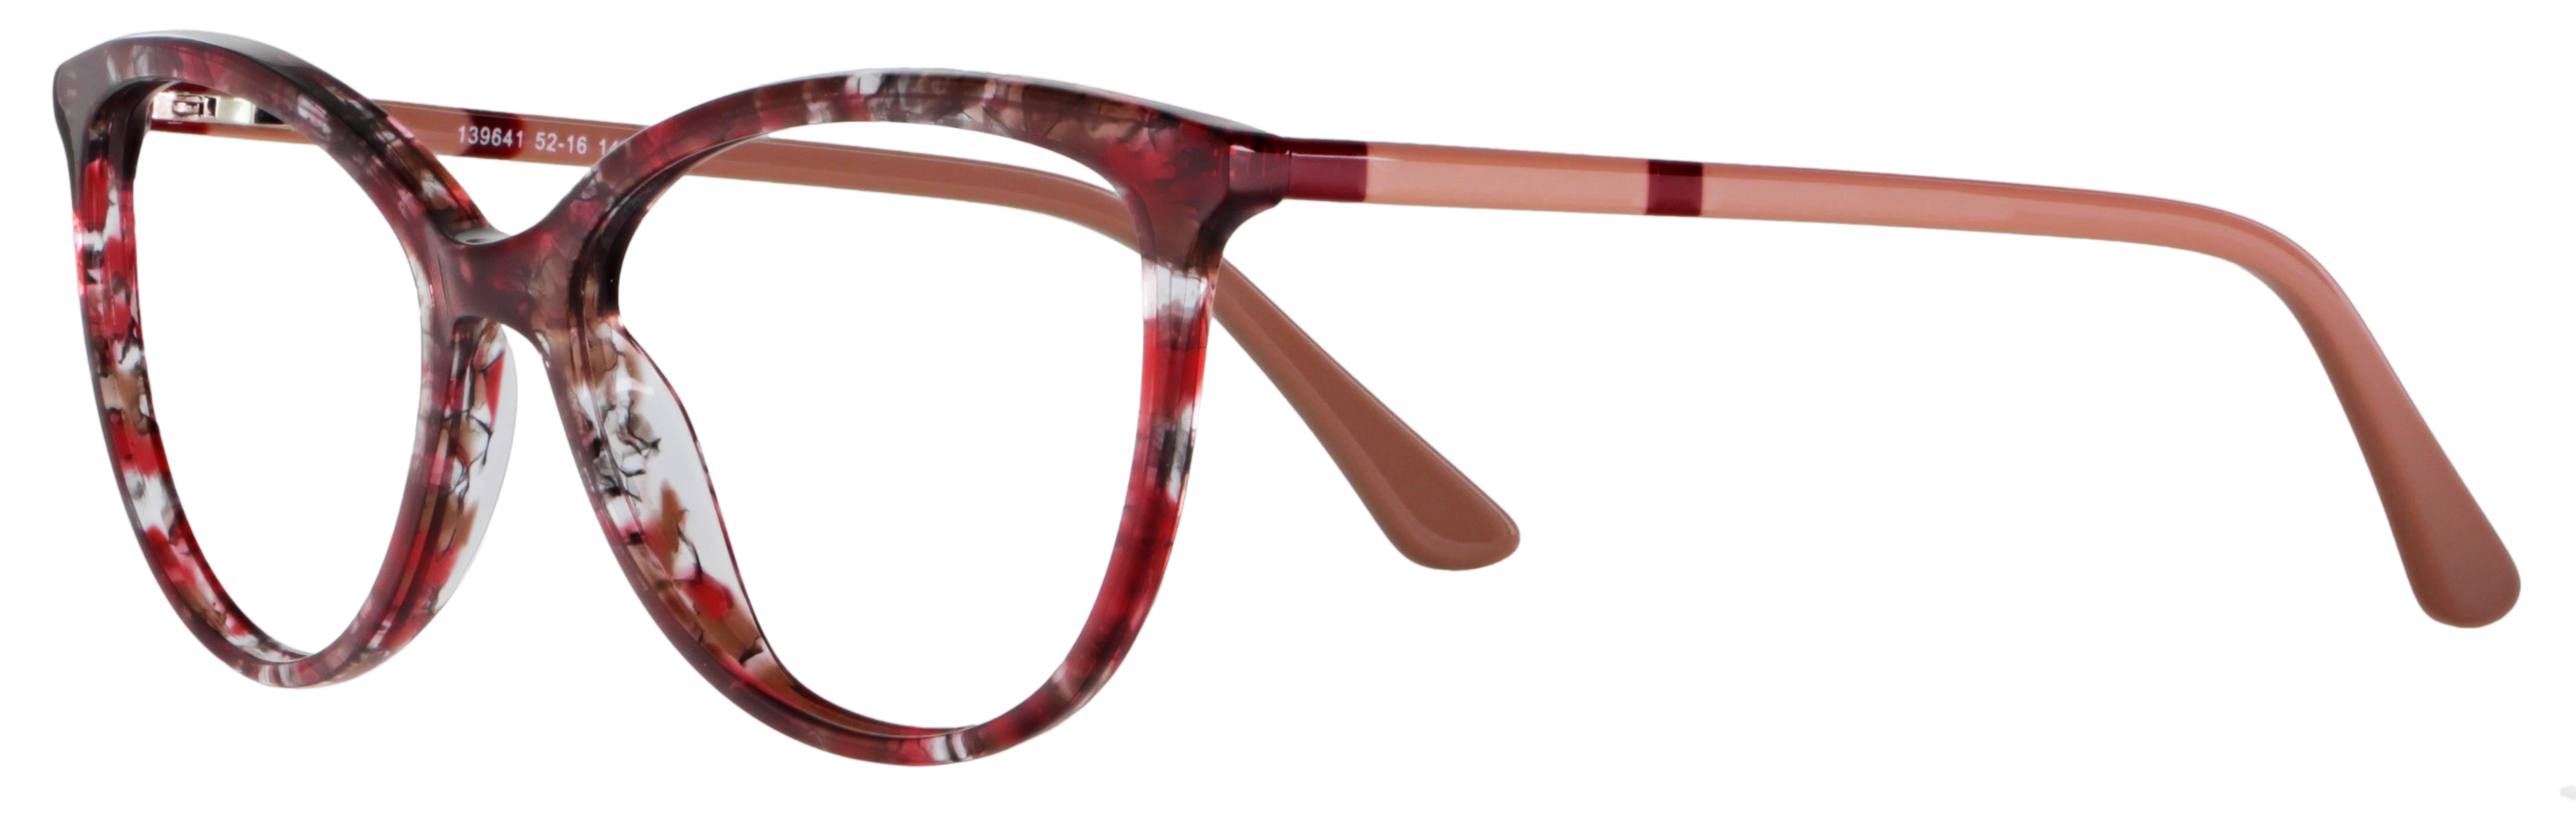 Das Bild zeigt die Korrektionsbrille 139641 von Abele Optik in rot gemustert/Bügel: beige.